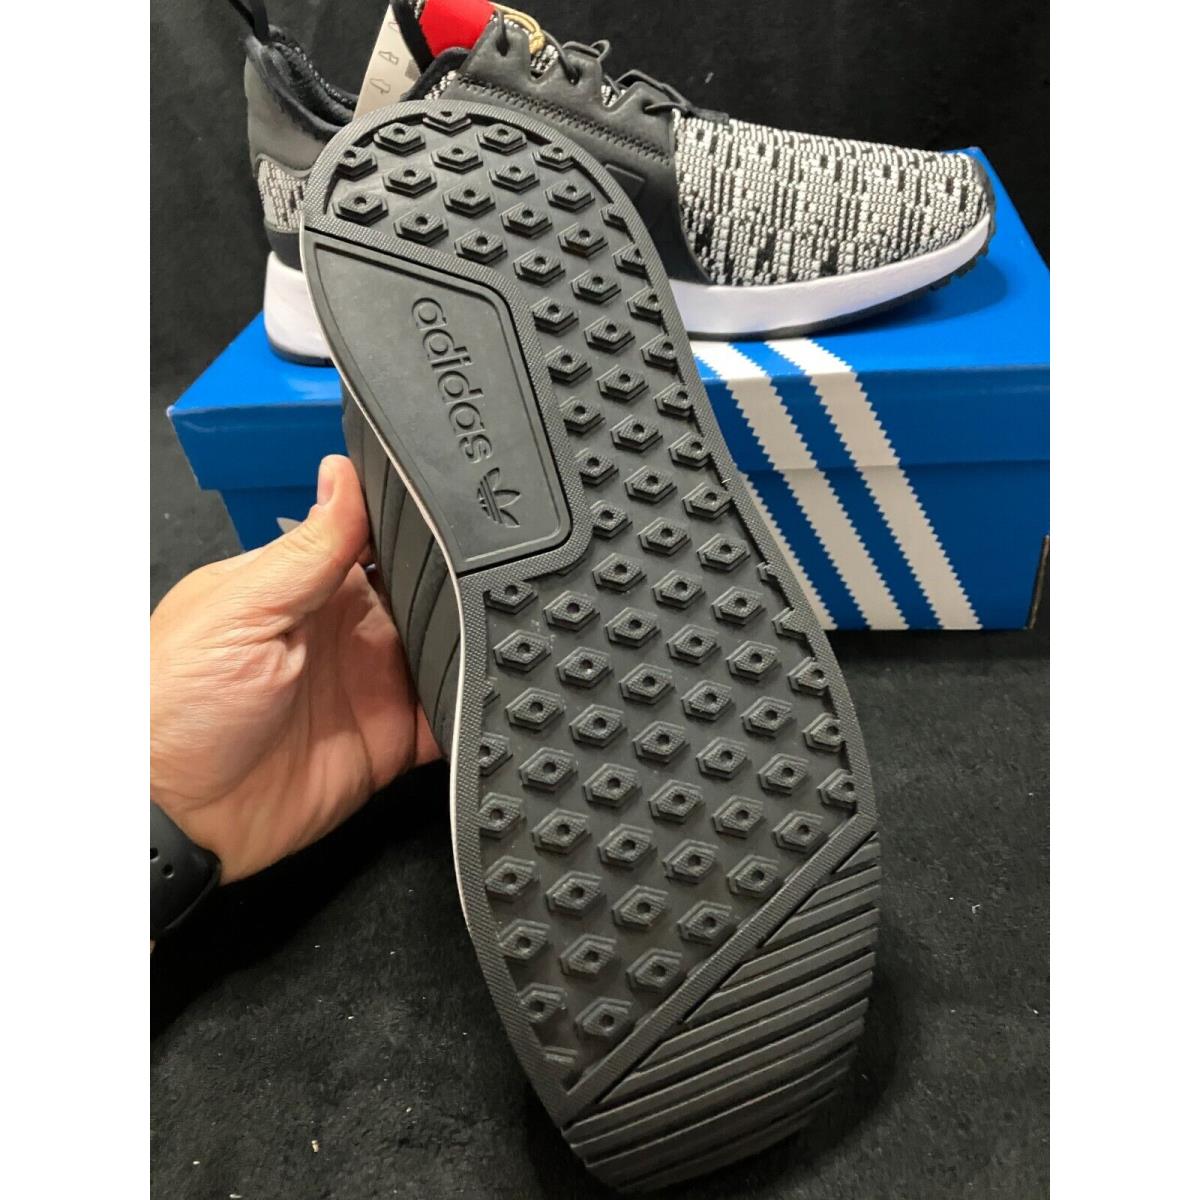 Adidas shoes  - Black 7